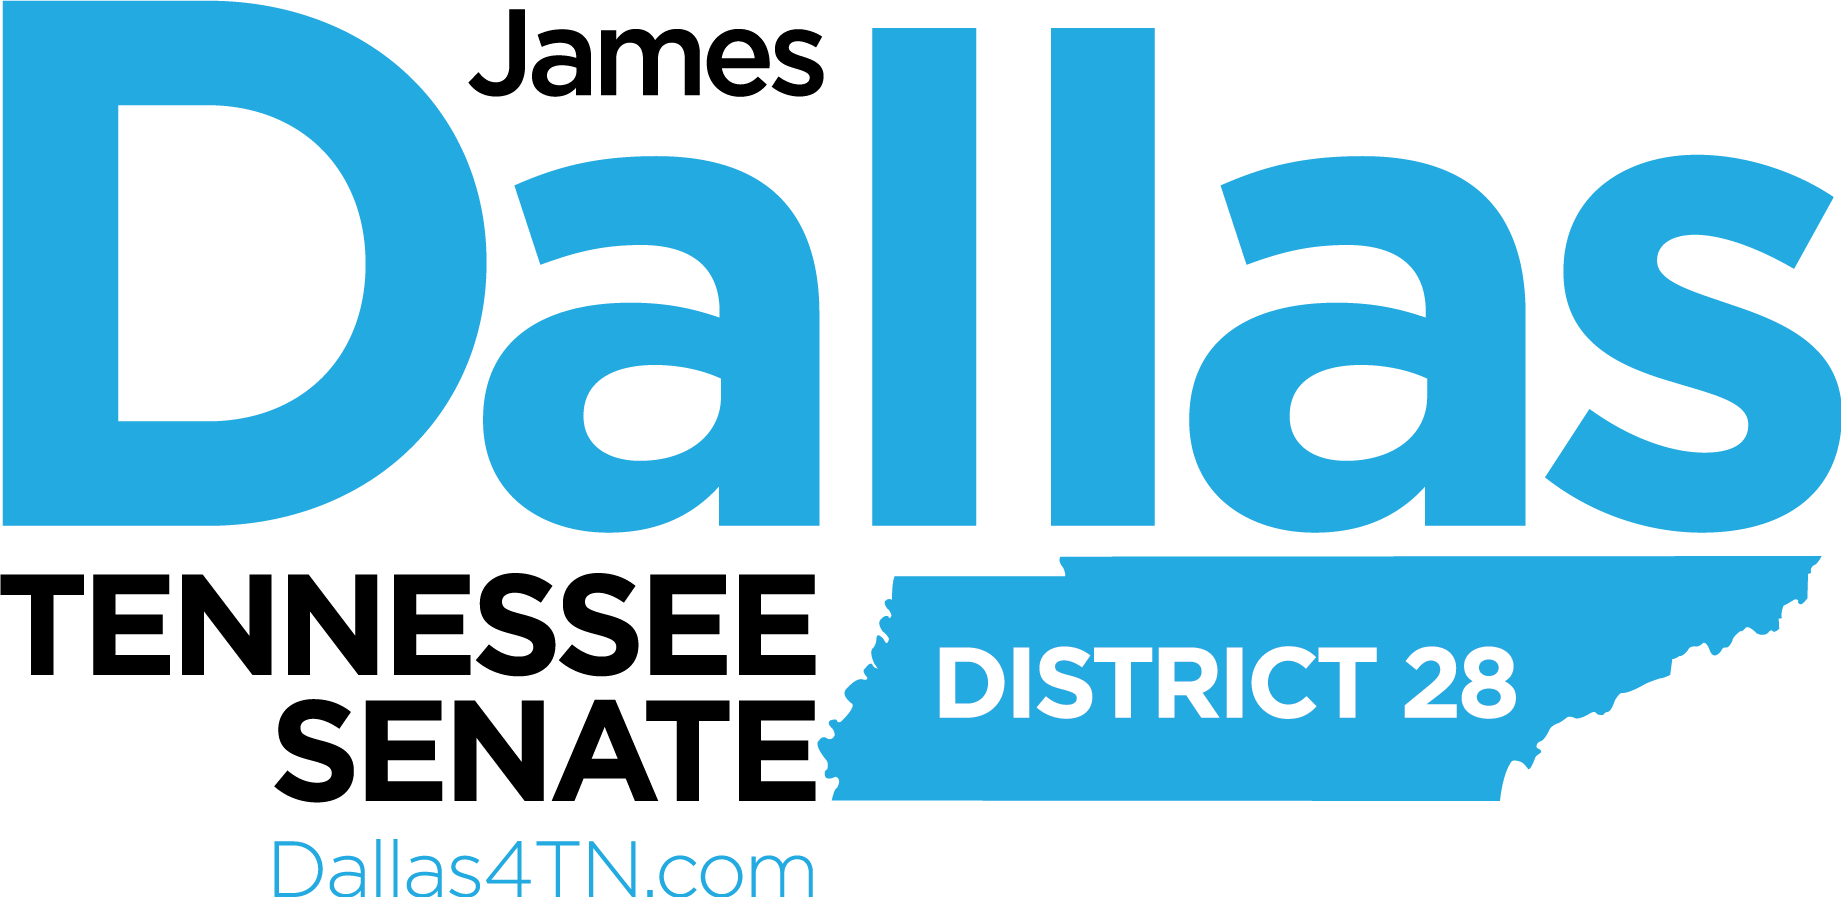 James Dallas for Tennessee State Senate